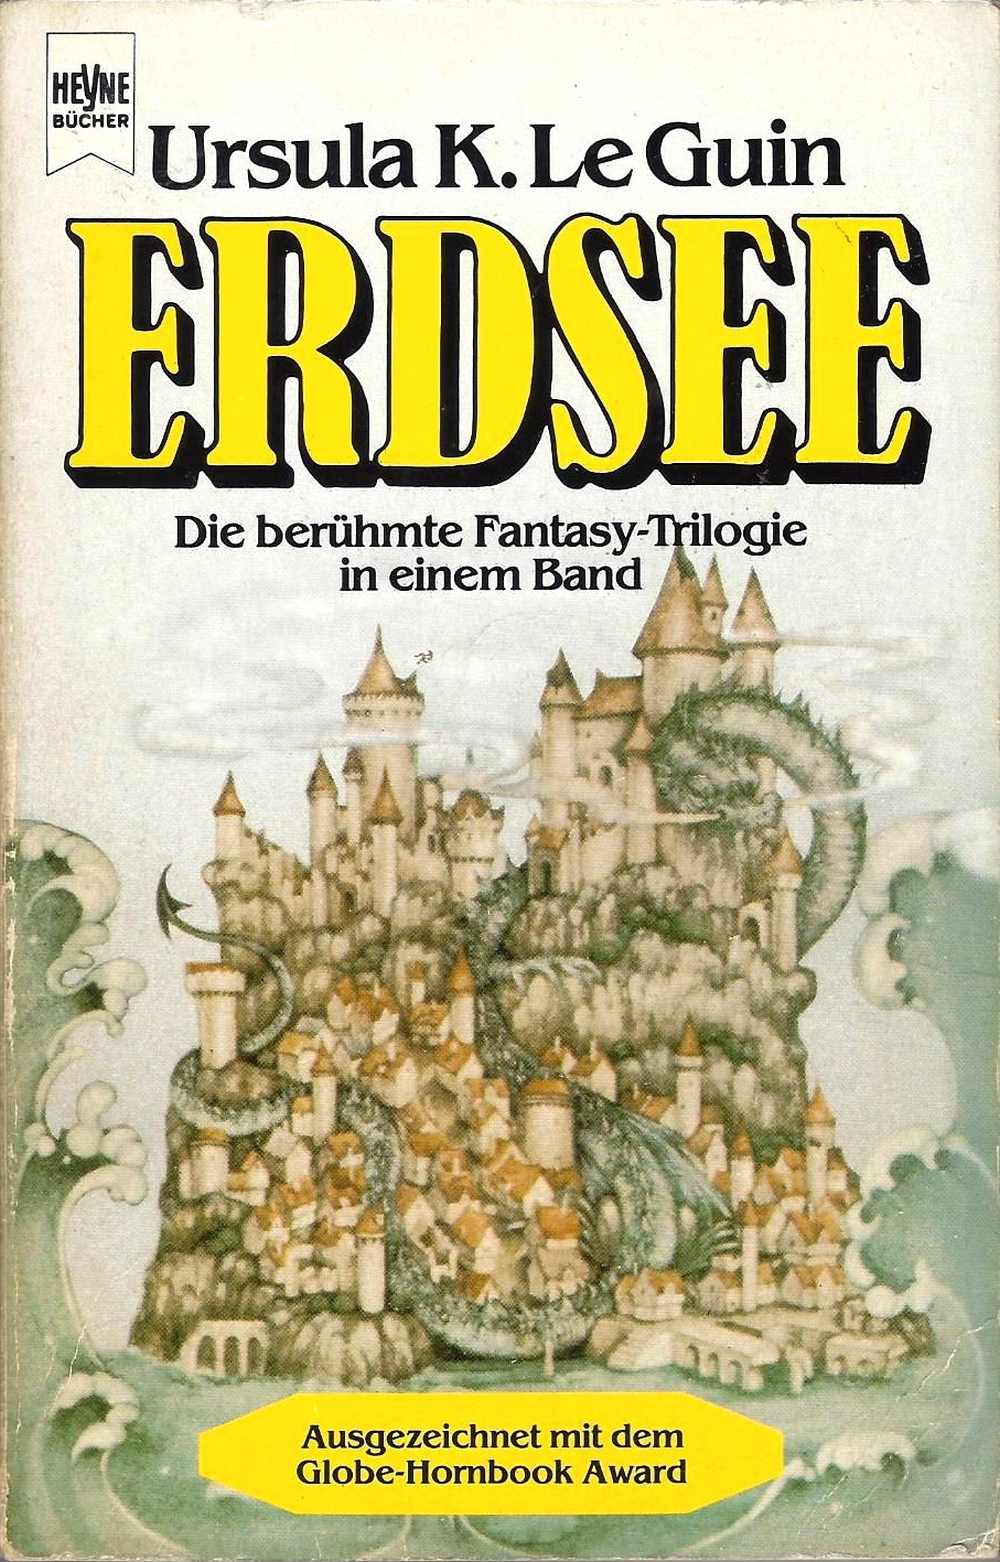 Cover des Buches "Erdsee" von Ursula K. Le Guin